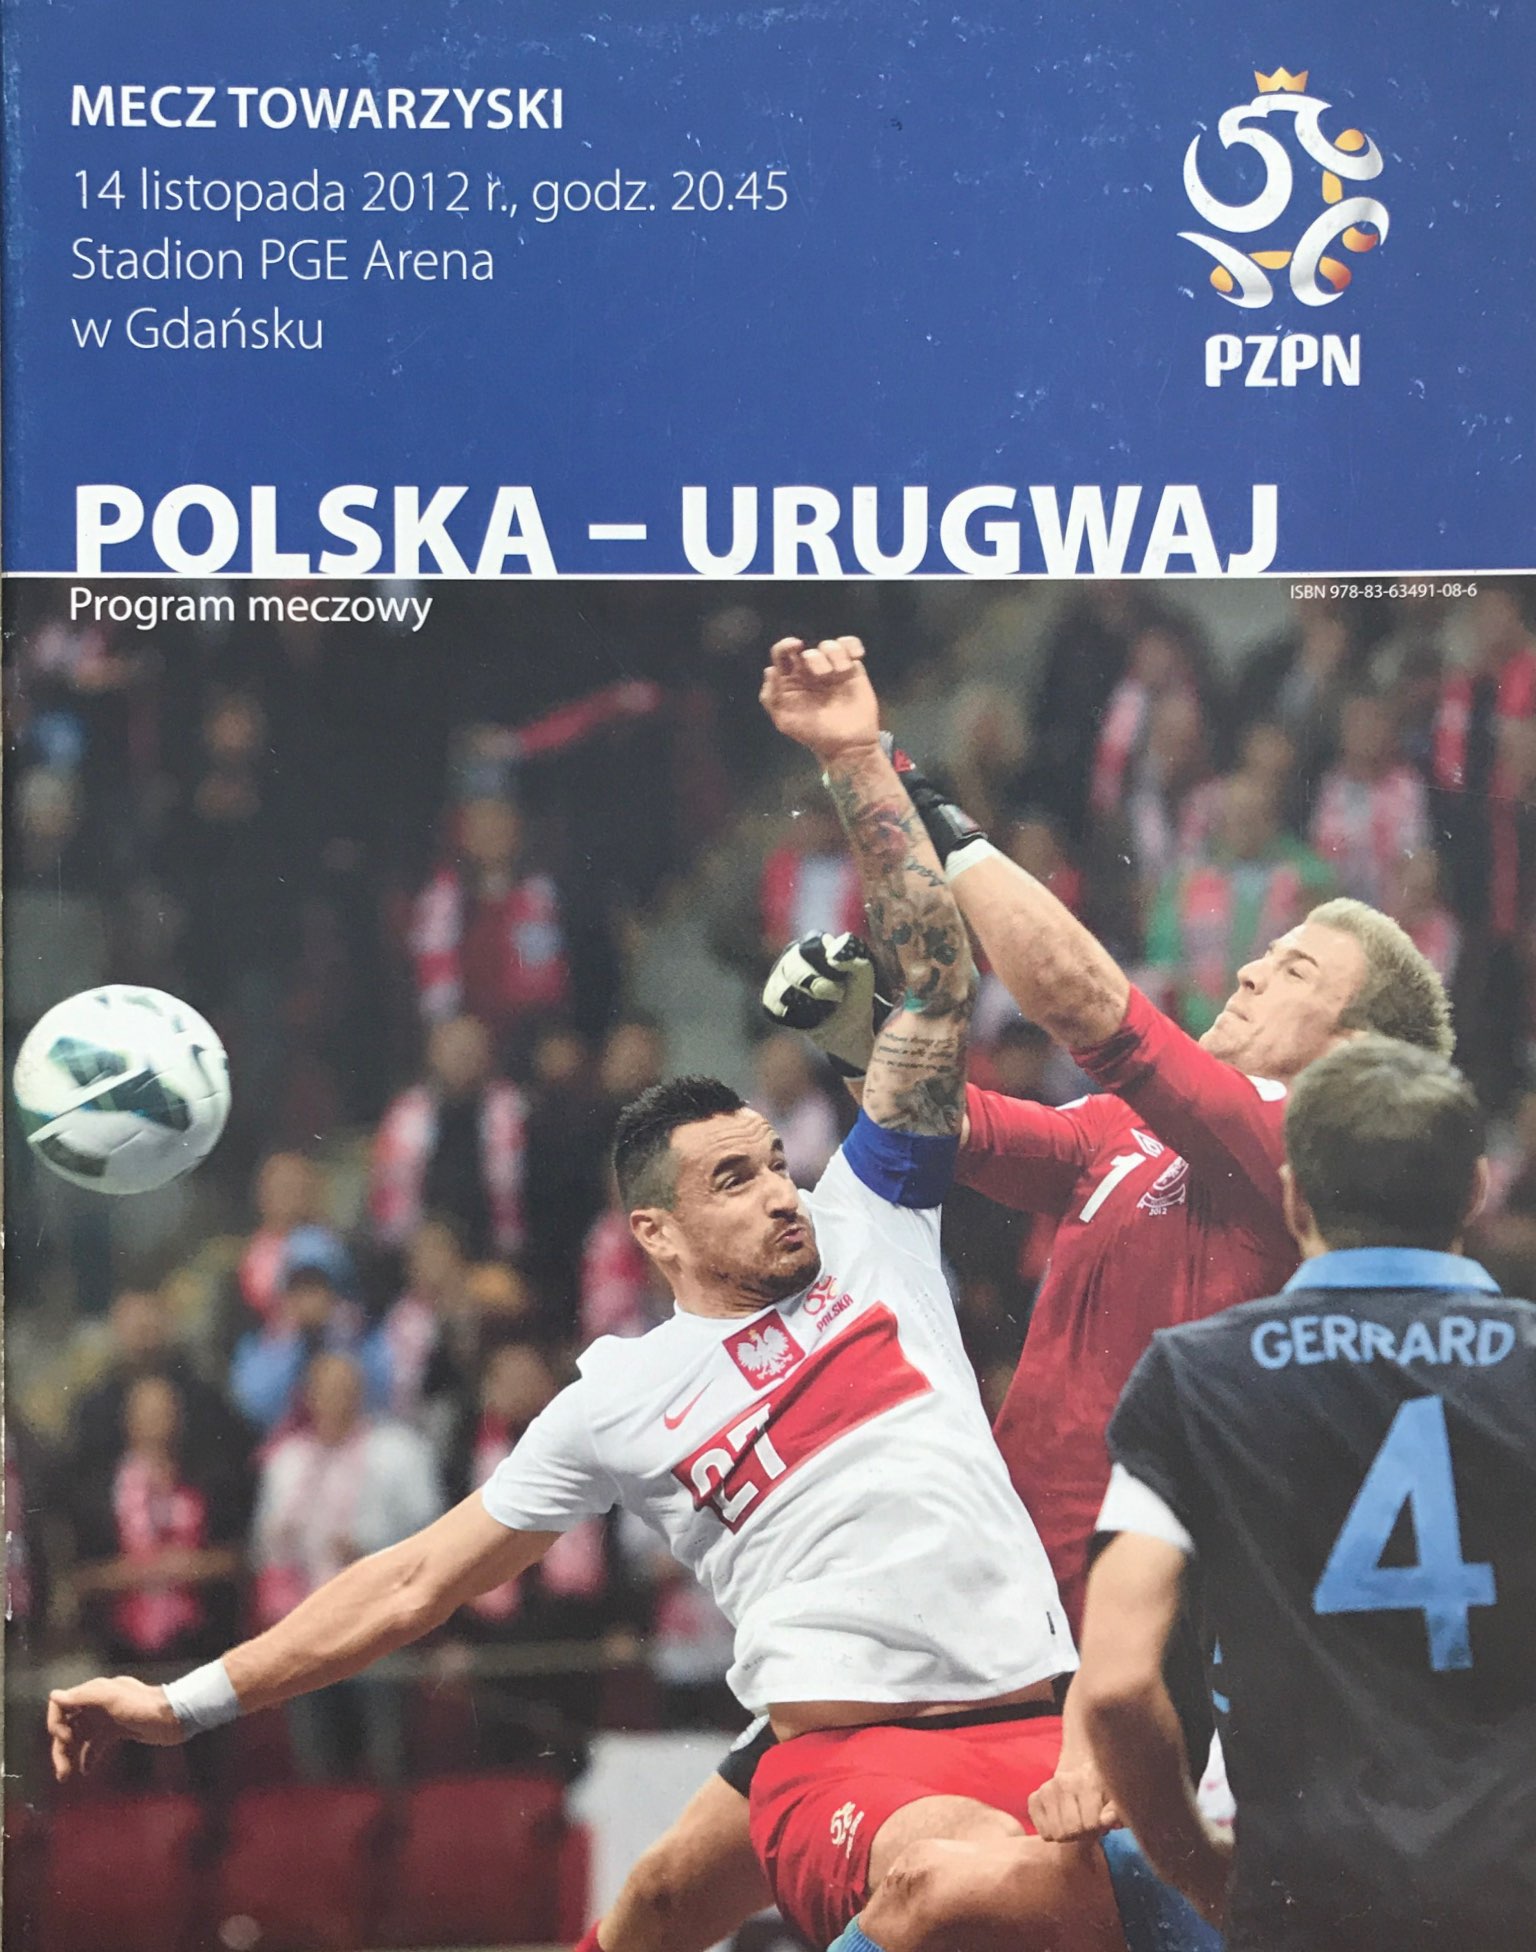 Program meczowy Polska - Urugwaj 1:3 (14.11.2012).